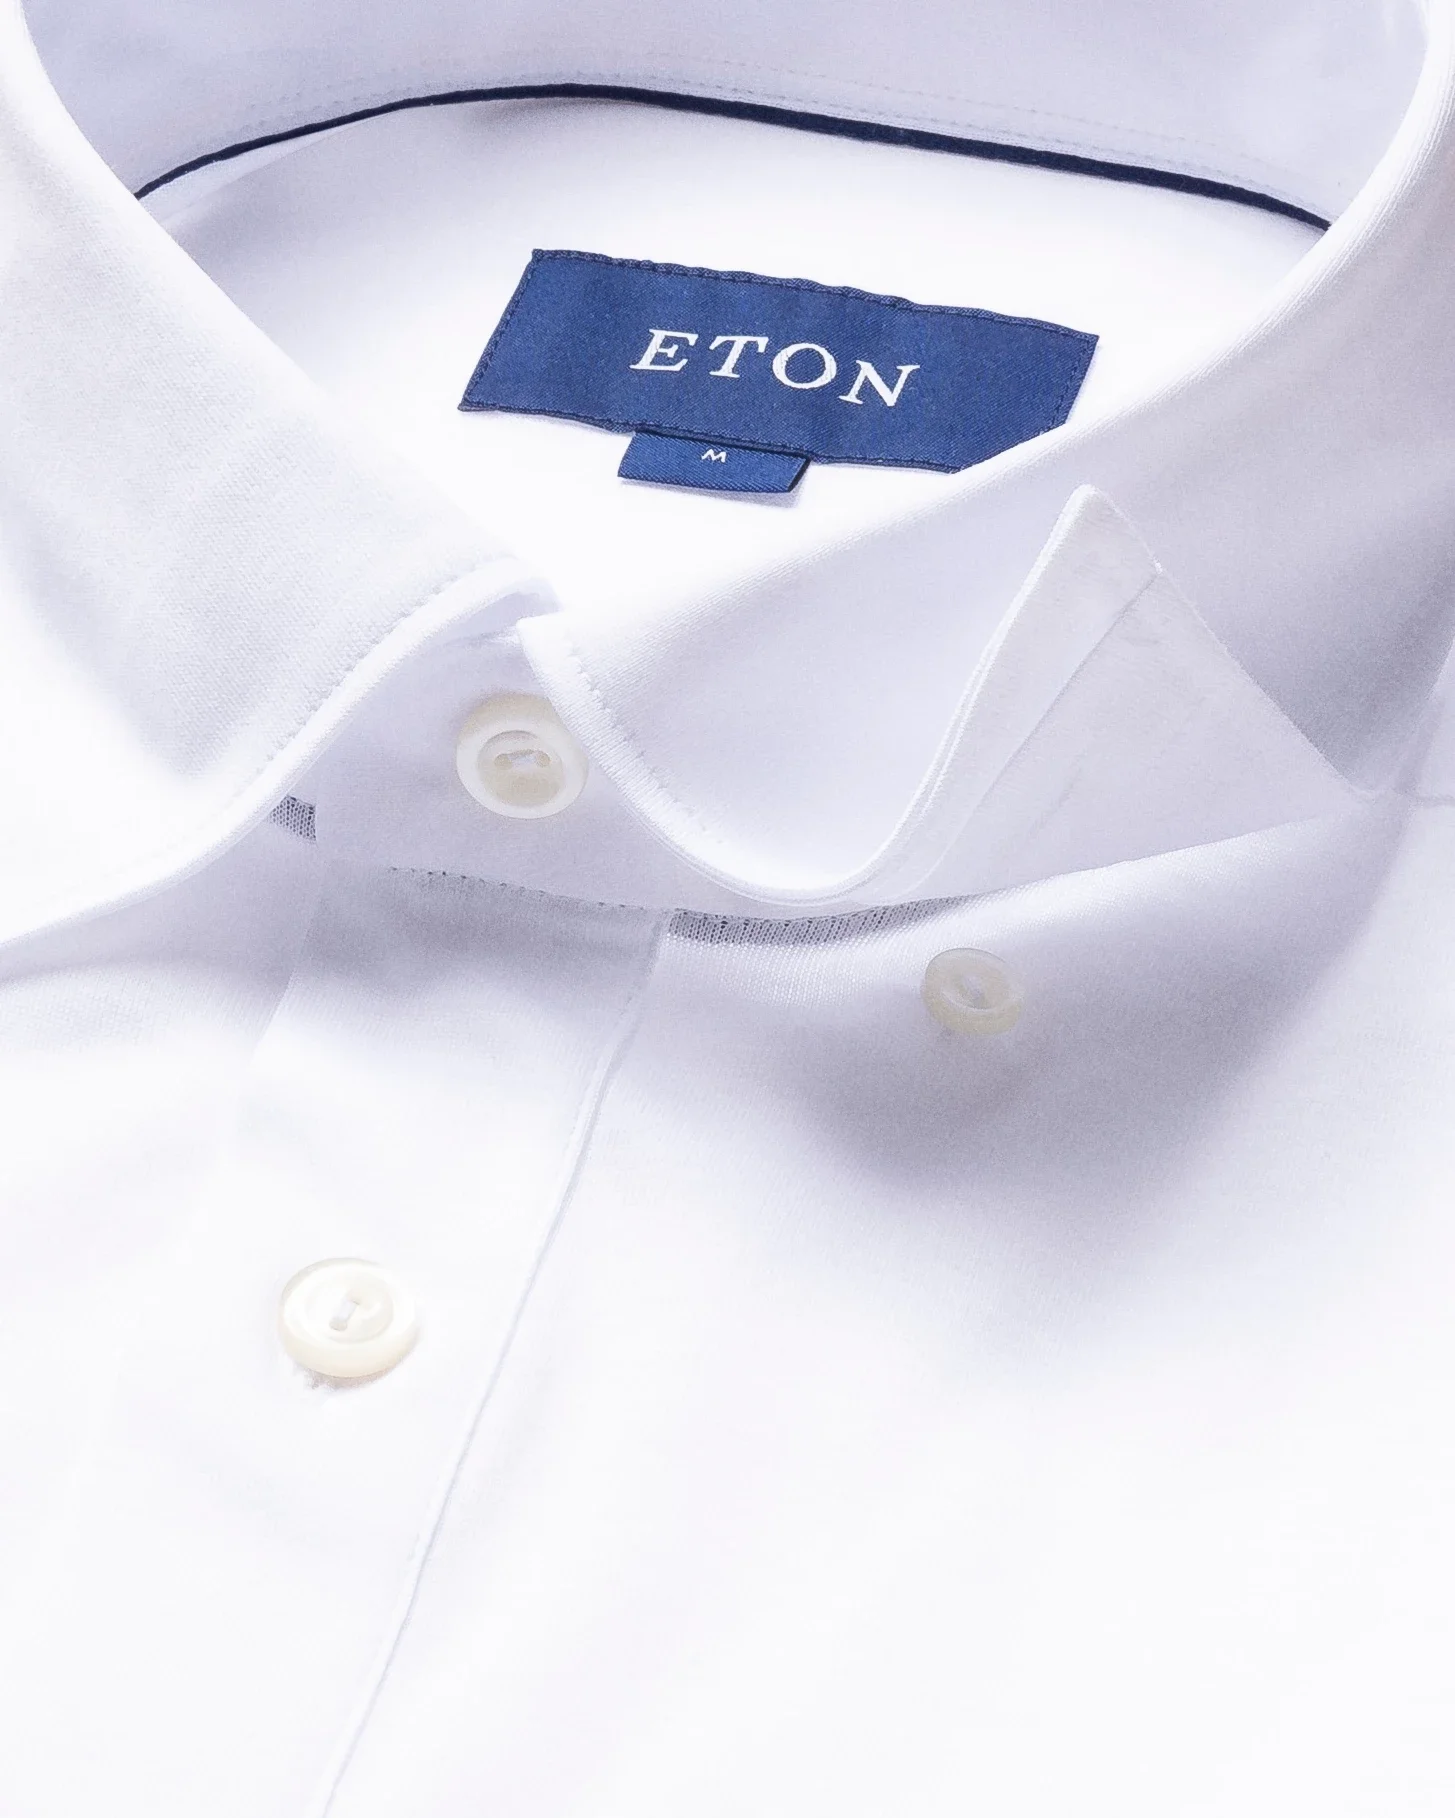 Eton - white jersey popover shirt short sleeved